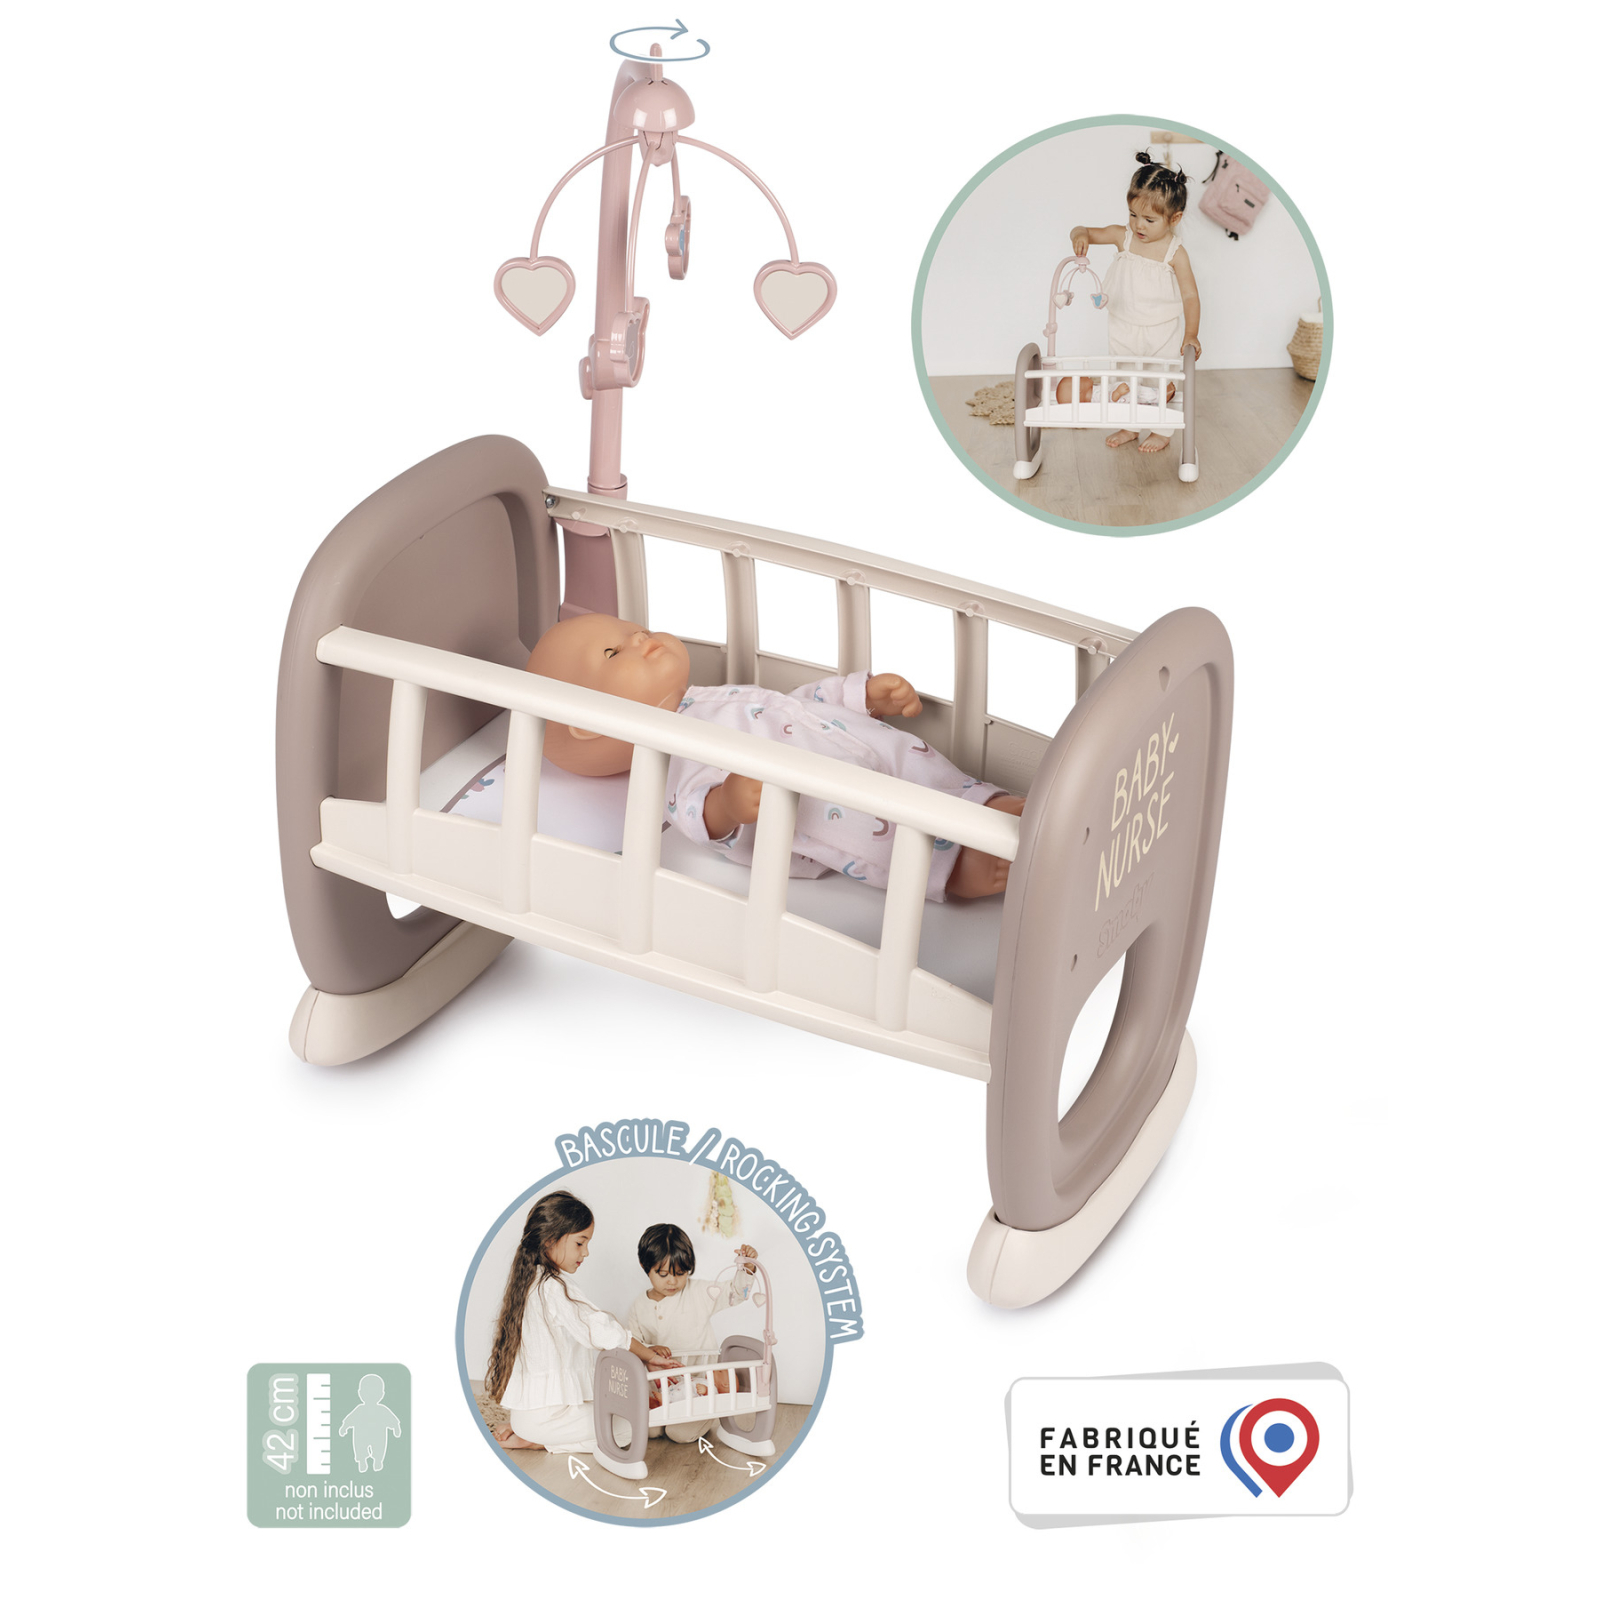 Ігровий набір Smoby Toys Колиска Baby Nurse з мобілем Сіро-біла (220372) зображення 3